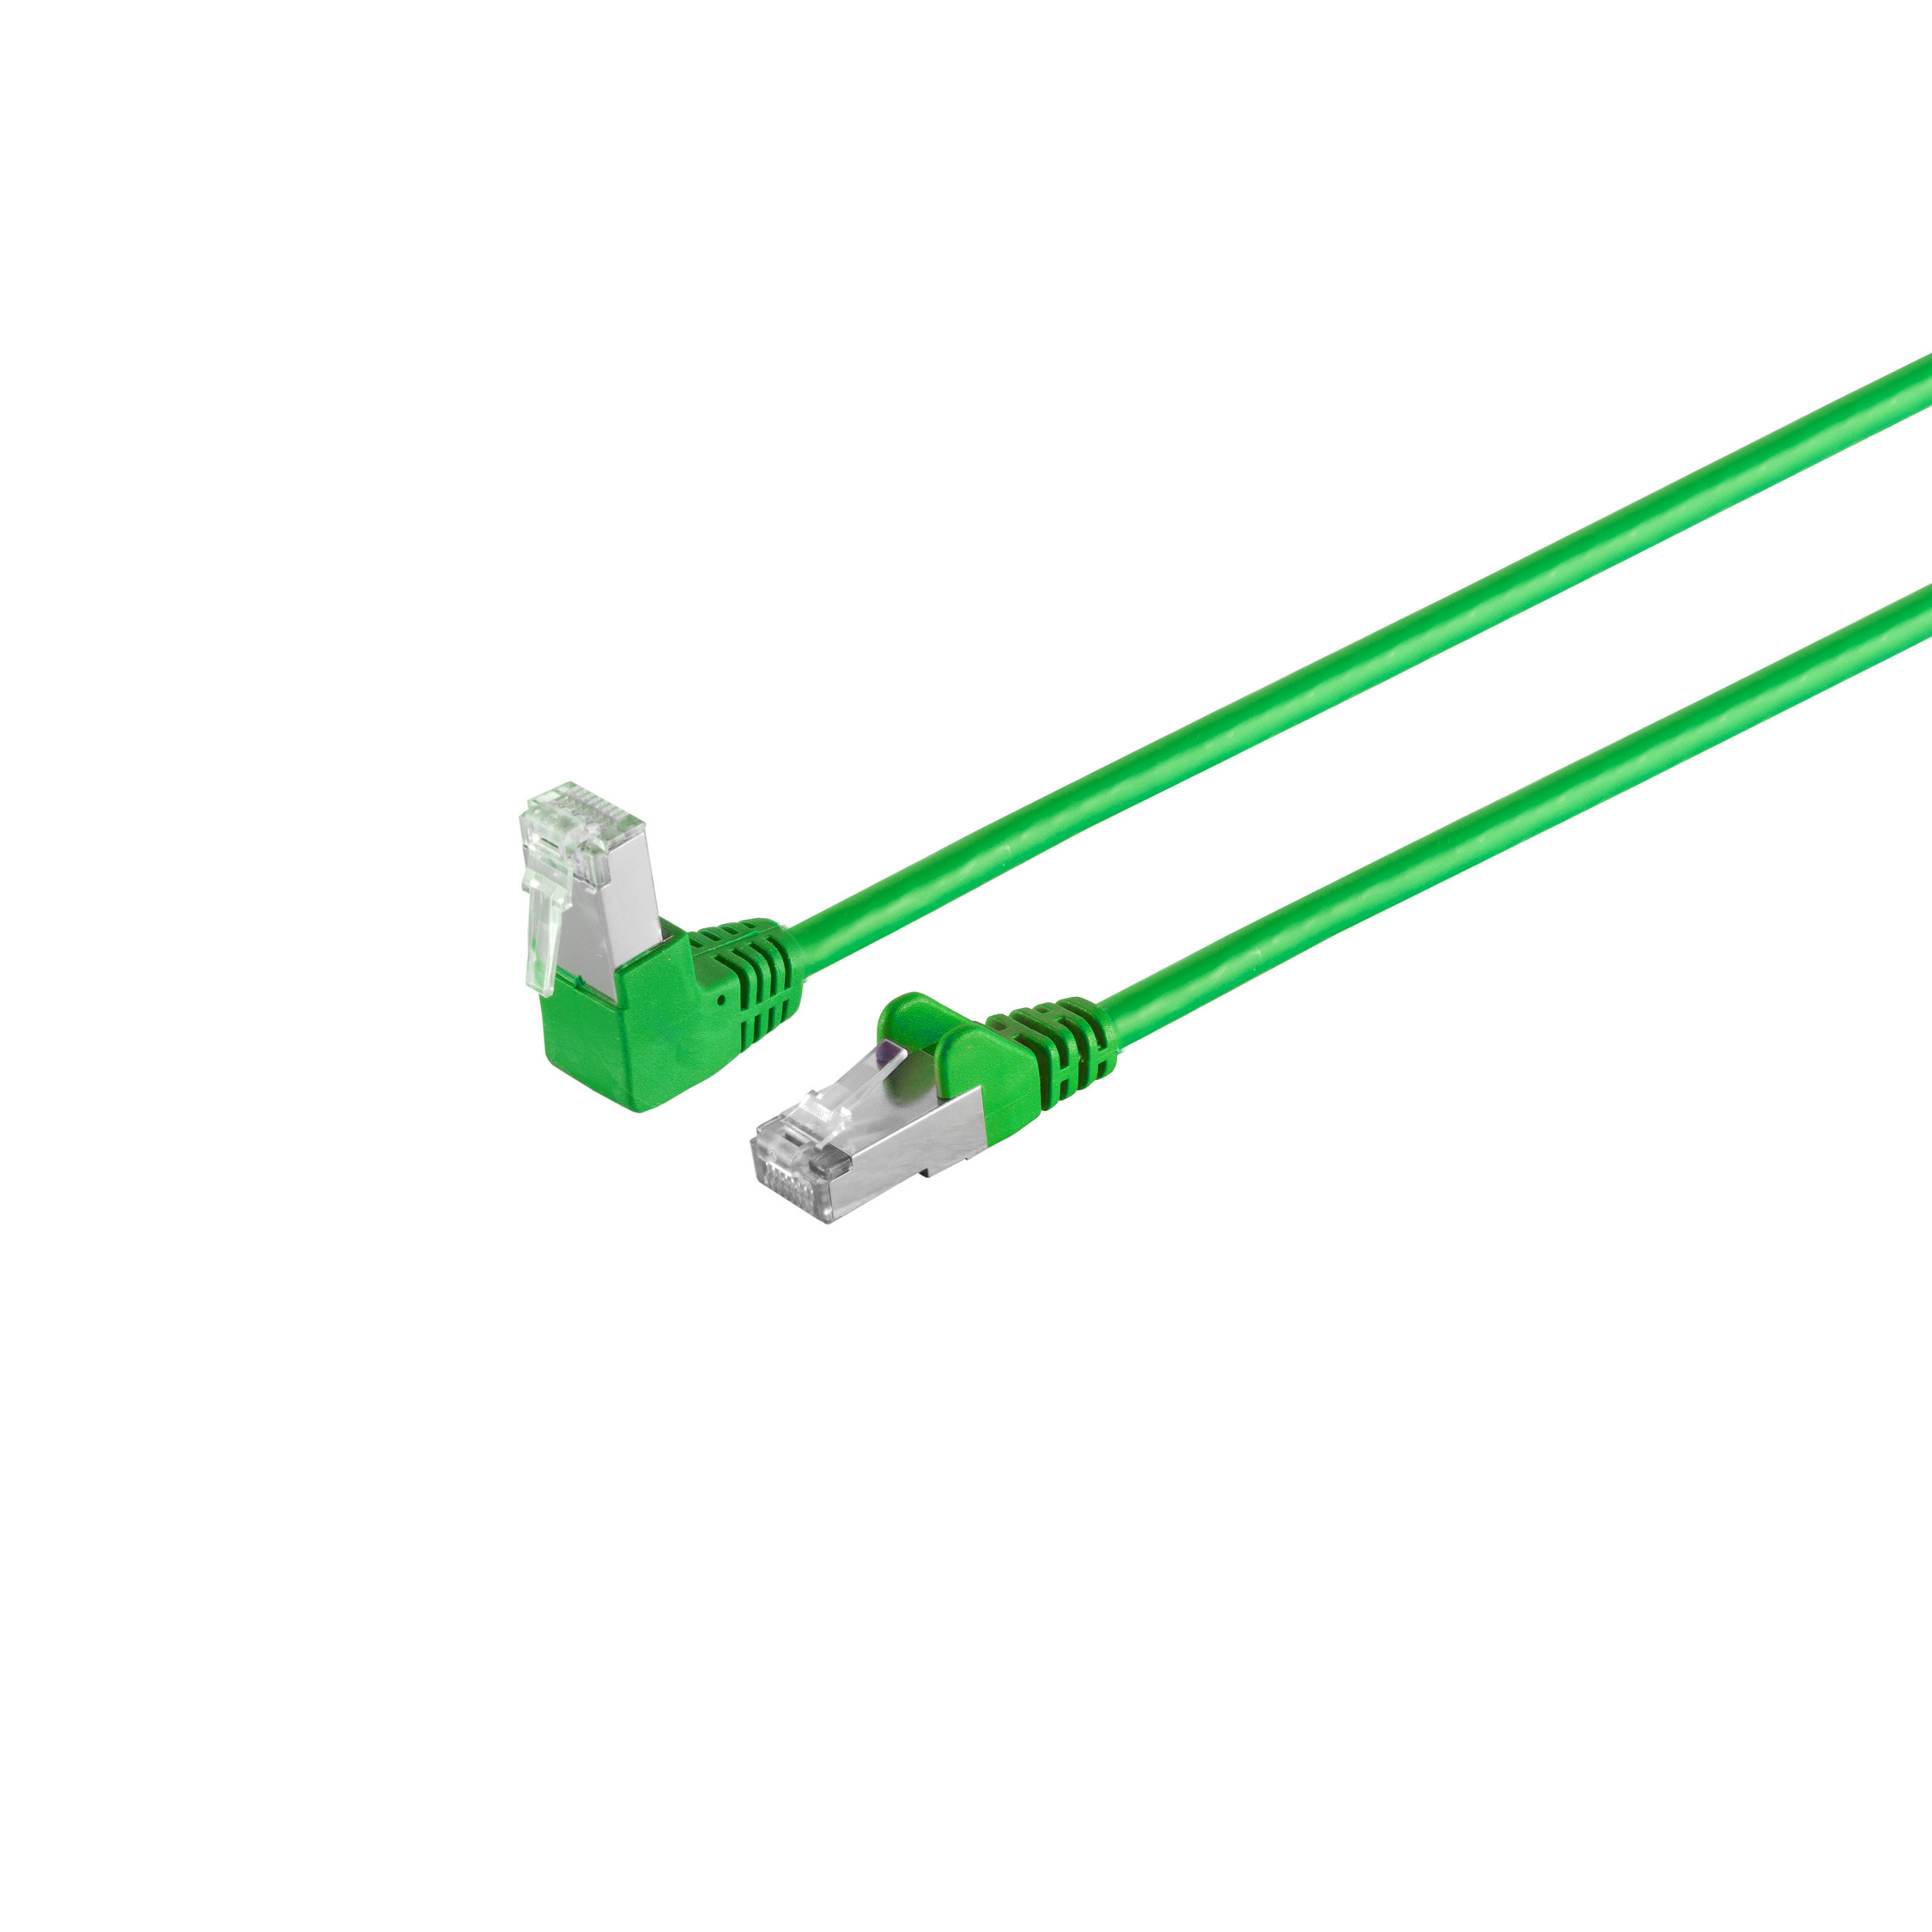 MAXIMUM 0,5m, m Winkel-gerade grün S/FTP RJ45, CONNECTIVITY S/CONN Patchkabel 6 0,50 PIMF Kabel cat